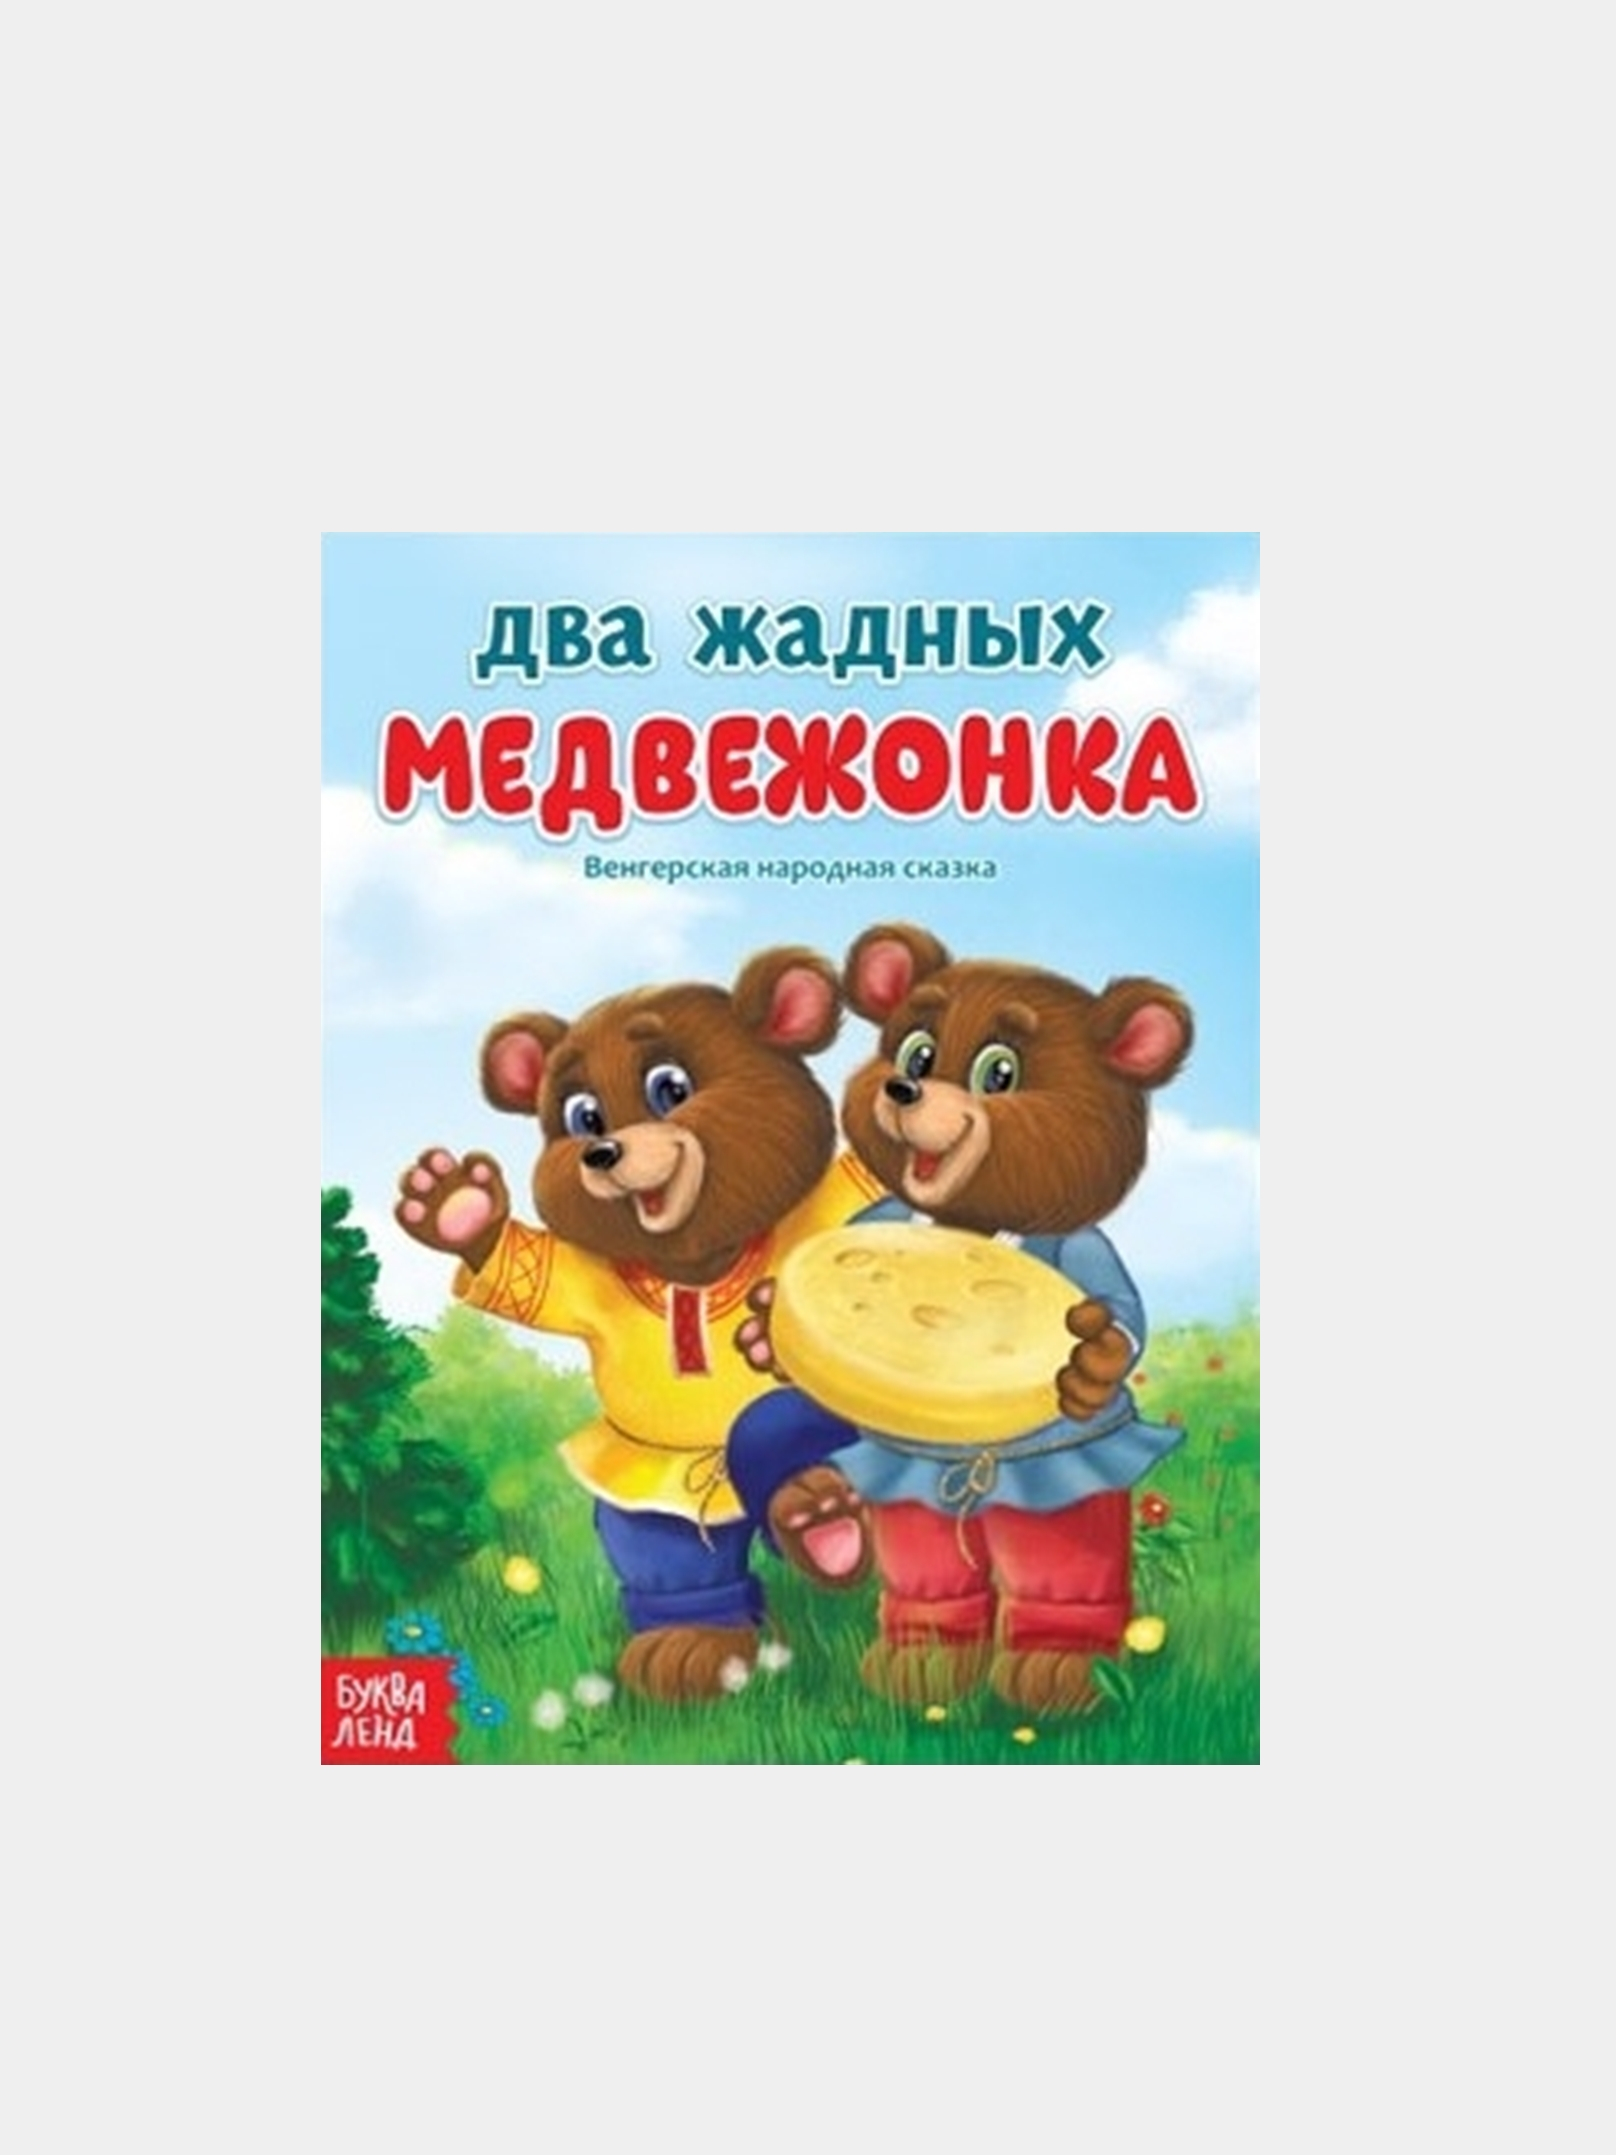 Обложка задник два жадных медвежонка для детей из сказки